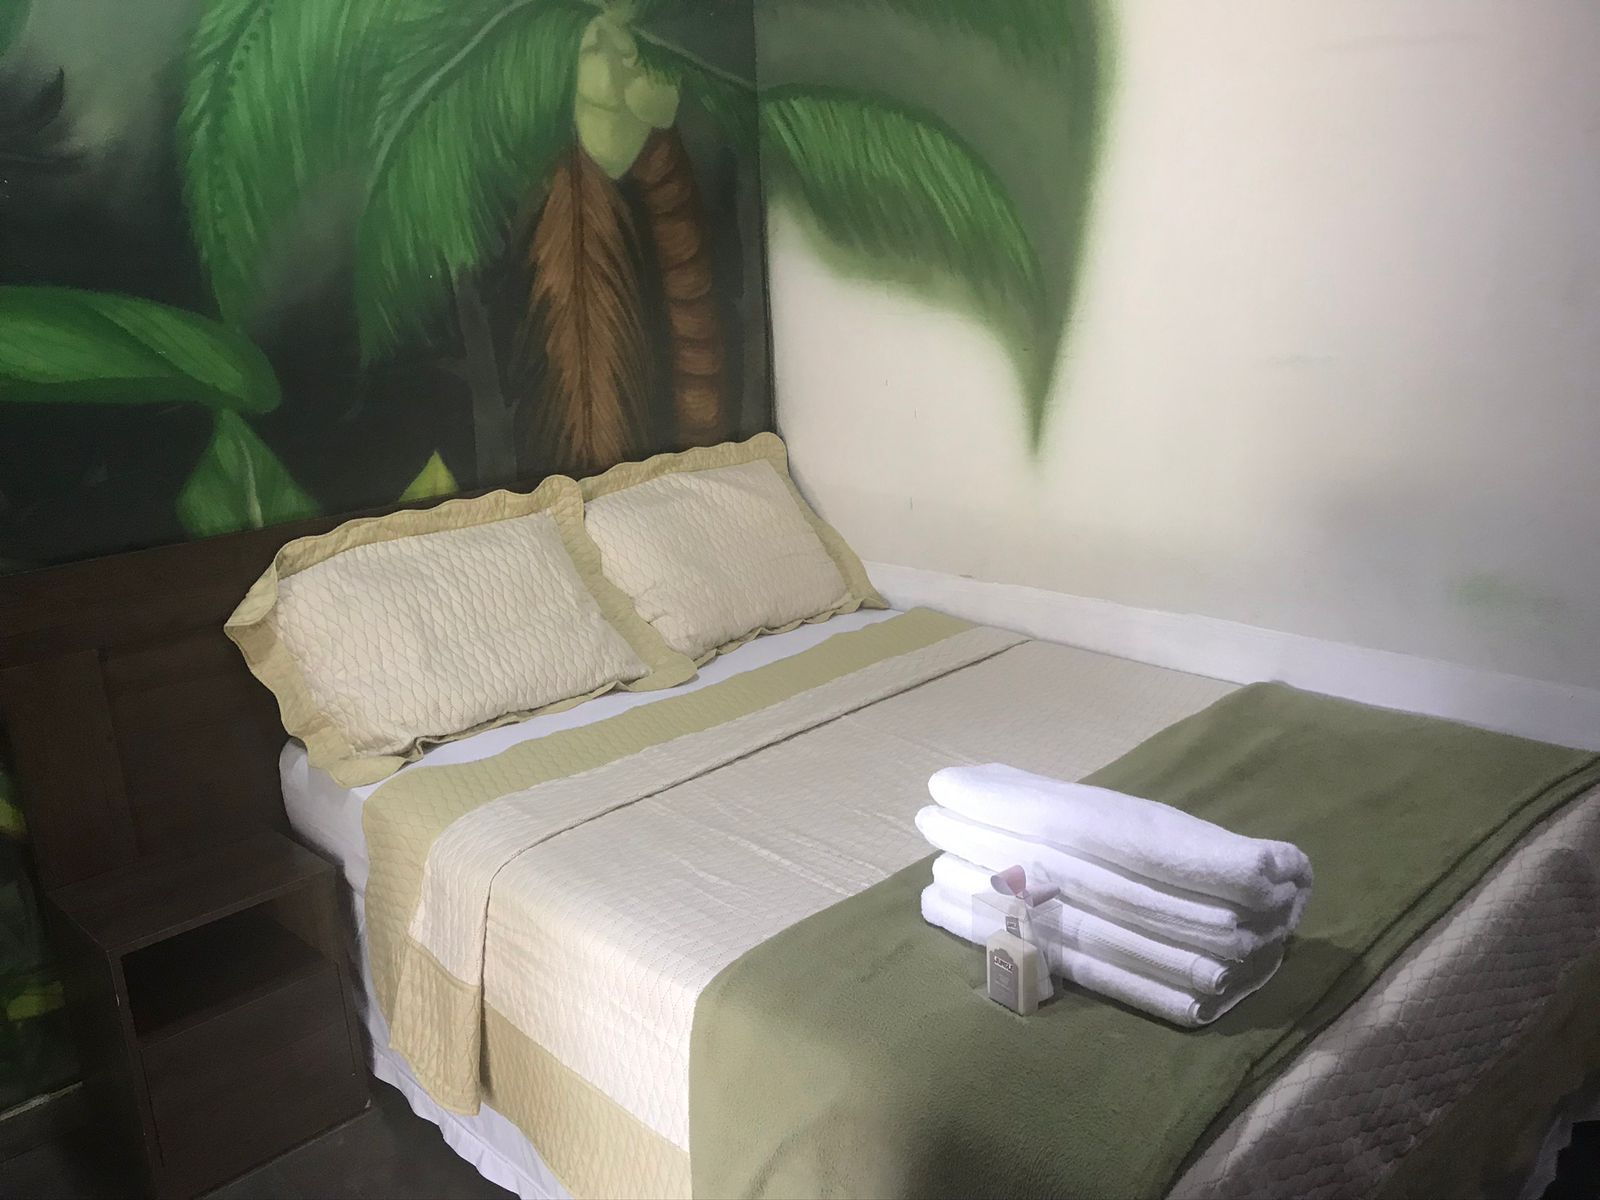 jungle spa e hotel